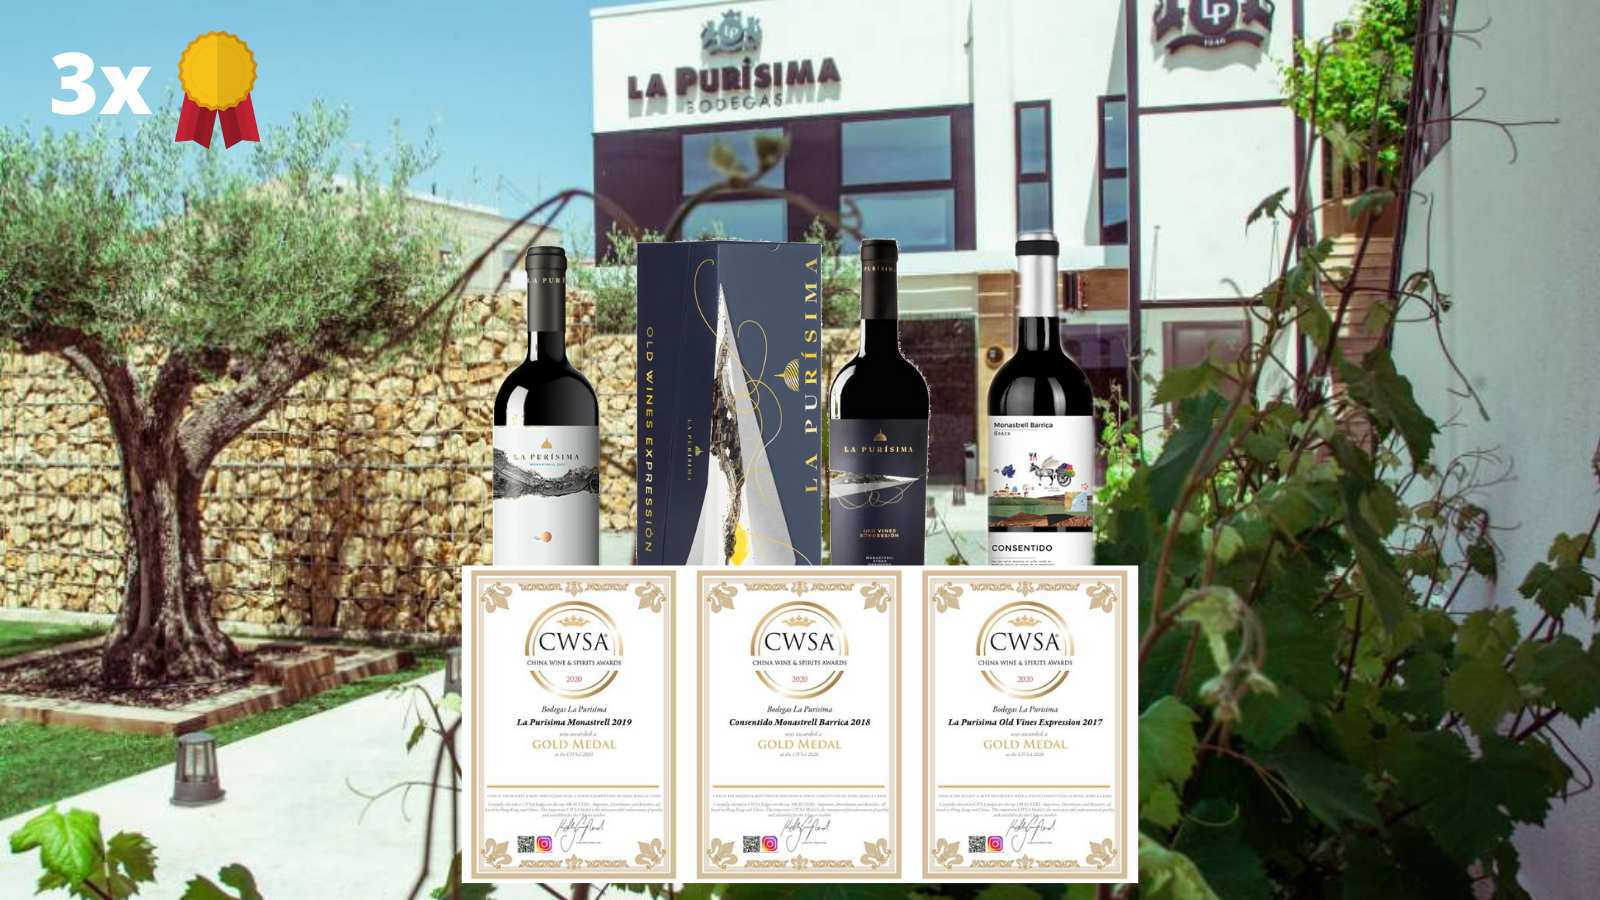 Bodegas la Purísima obtiene 3 medallas de oro en CWSA, China Wine & Spirits Awards